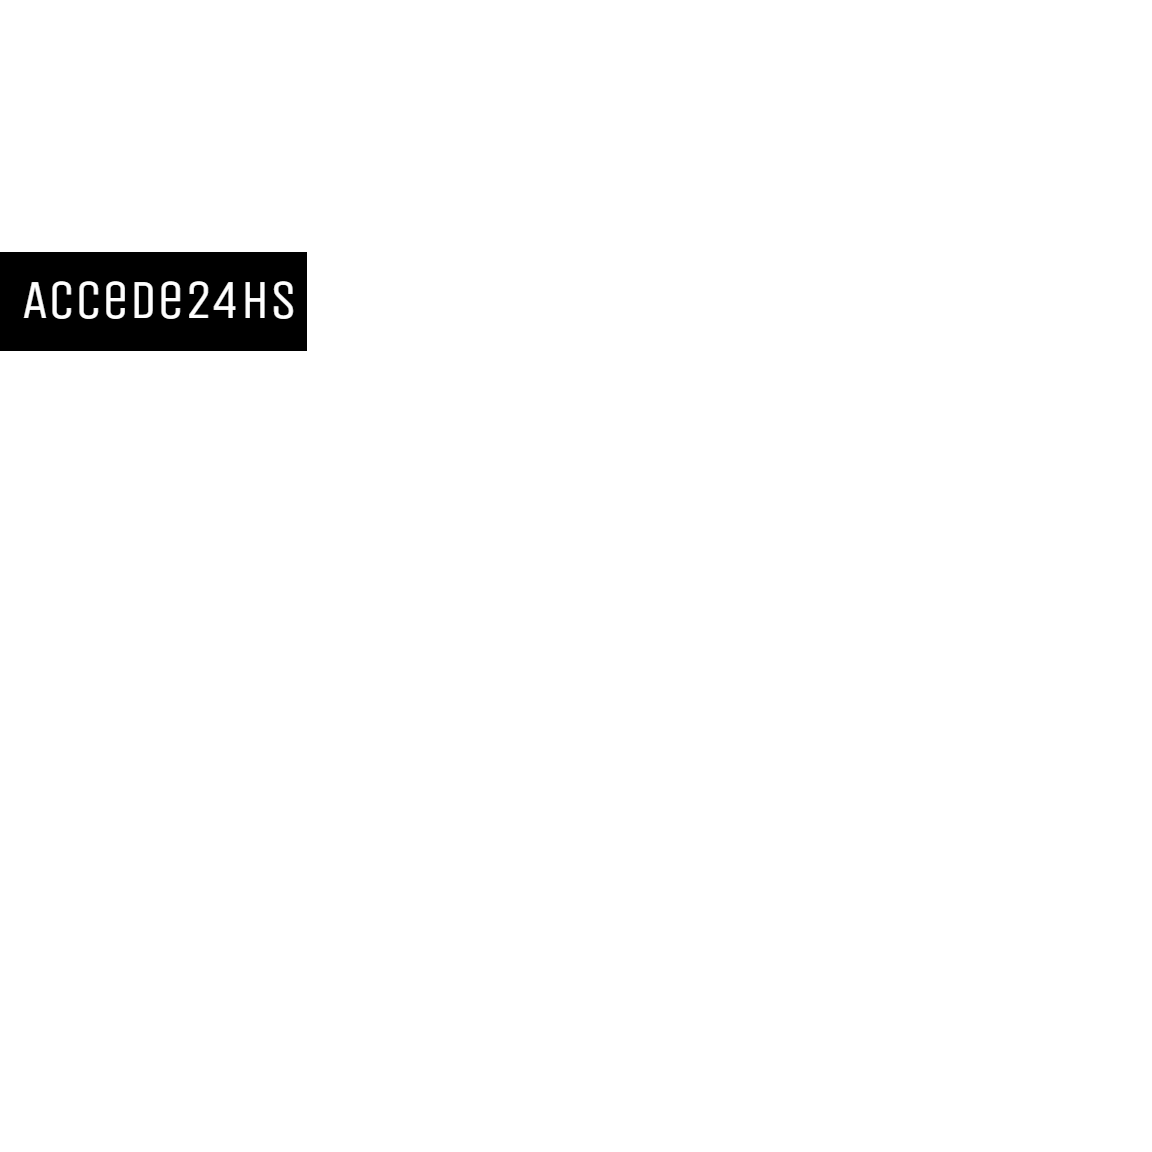 Accede 24hs Cerrajero Logo